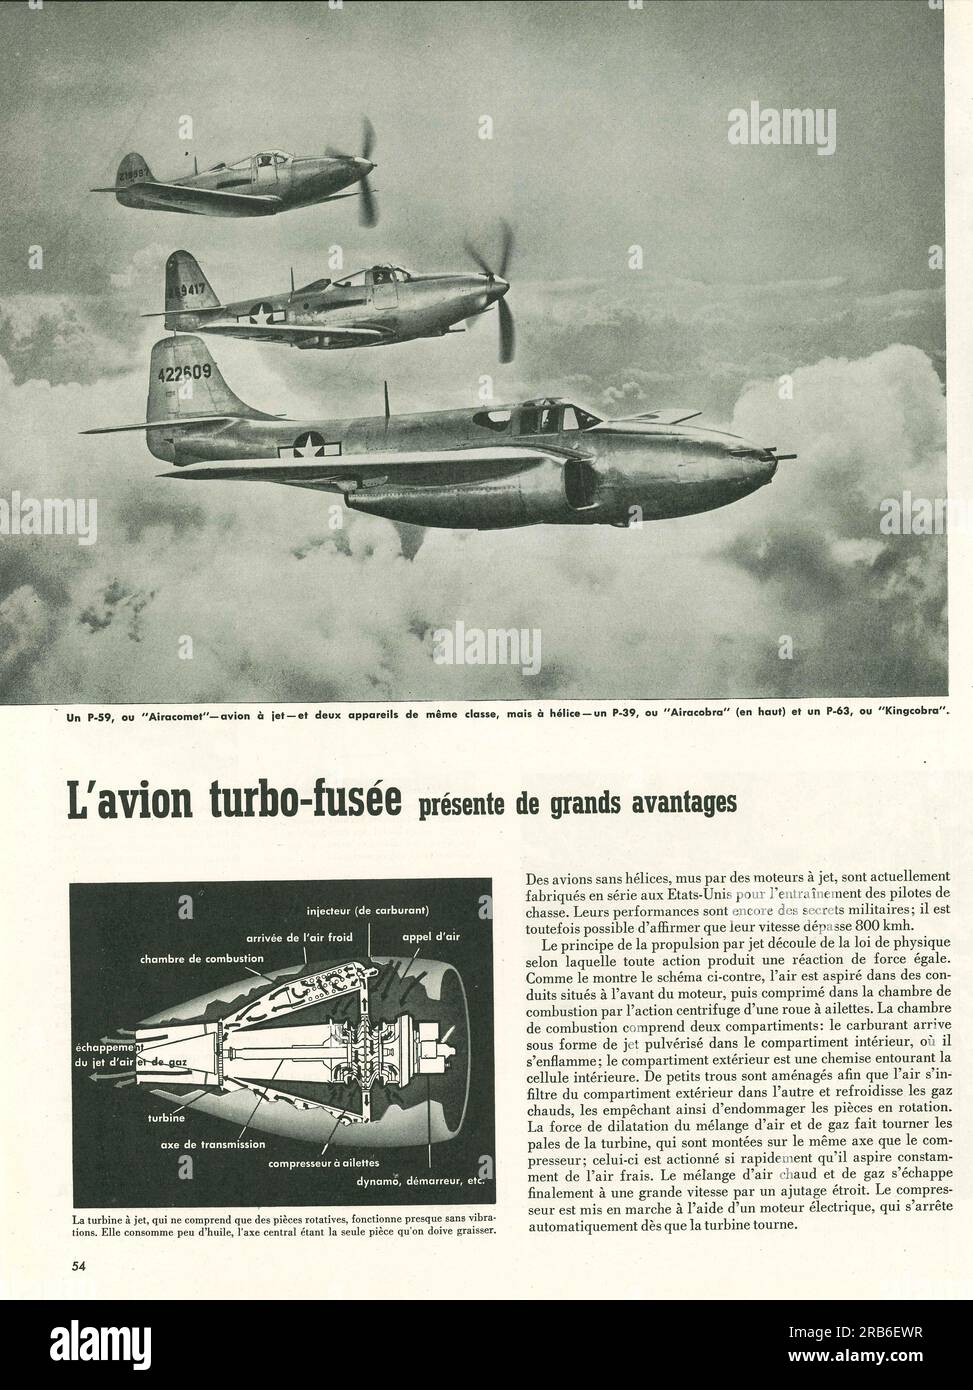 Turbo-Raketenflugzeuge. Der Artikel über Bell P-59, P-39, P-63 Airacomet American Jets, entworfen von Bell Aircraft im Zweiten Weltkrieg Französisches Magazin 1946 Stockfoto